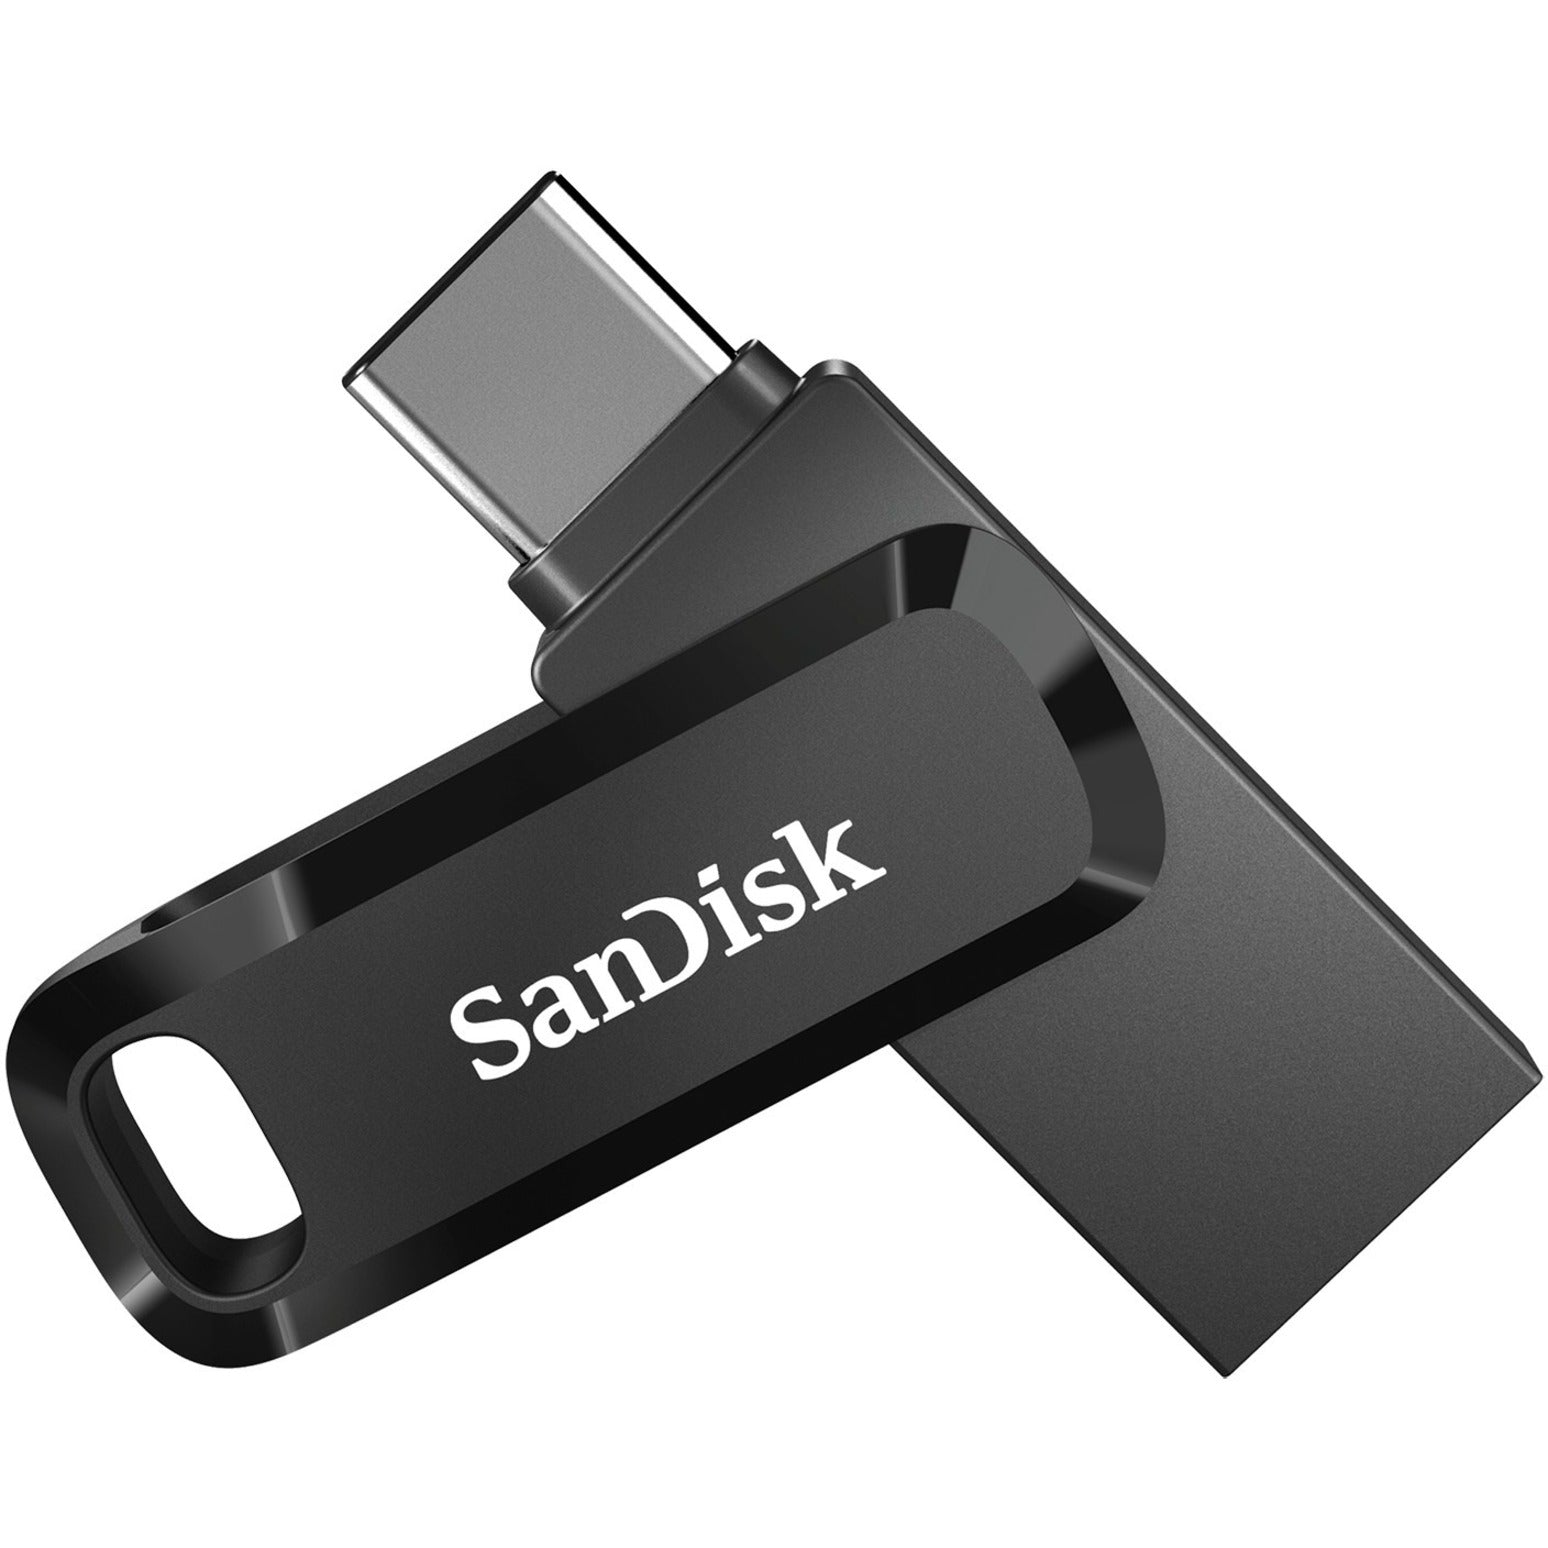 SanDisk SDDDC3-032G-A46 Ultra Dual Drive Go USB Tipo C 32GB Velocidades de Transferencia Rápidas Copia de Seguridad de Archivos Fácil Marca: SanDisk